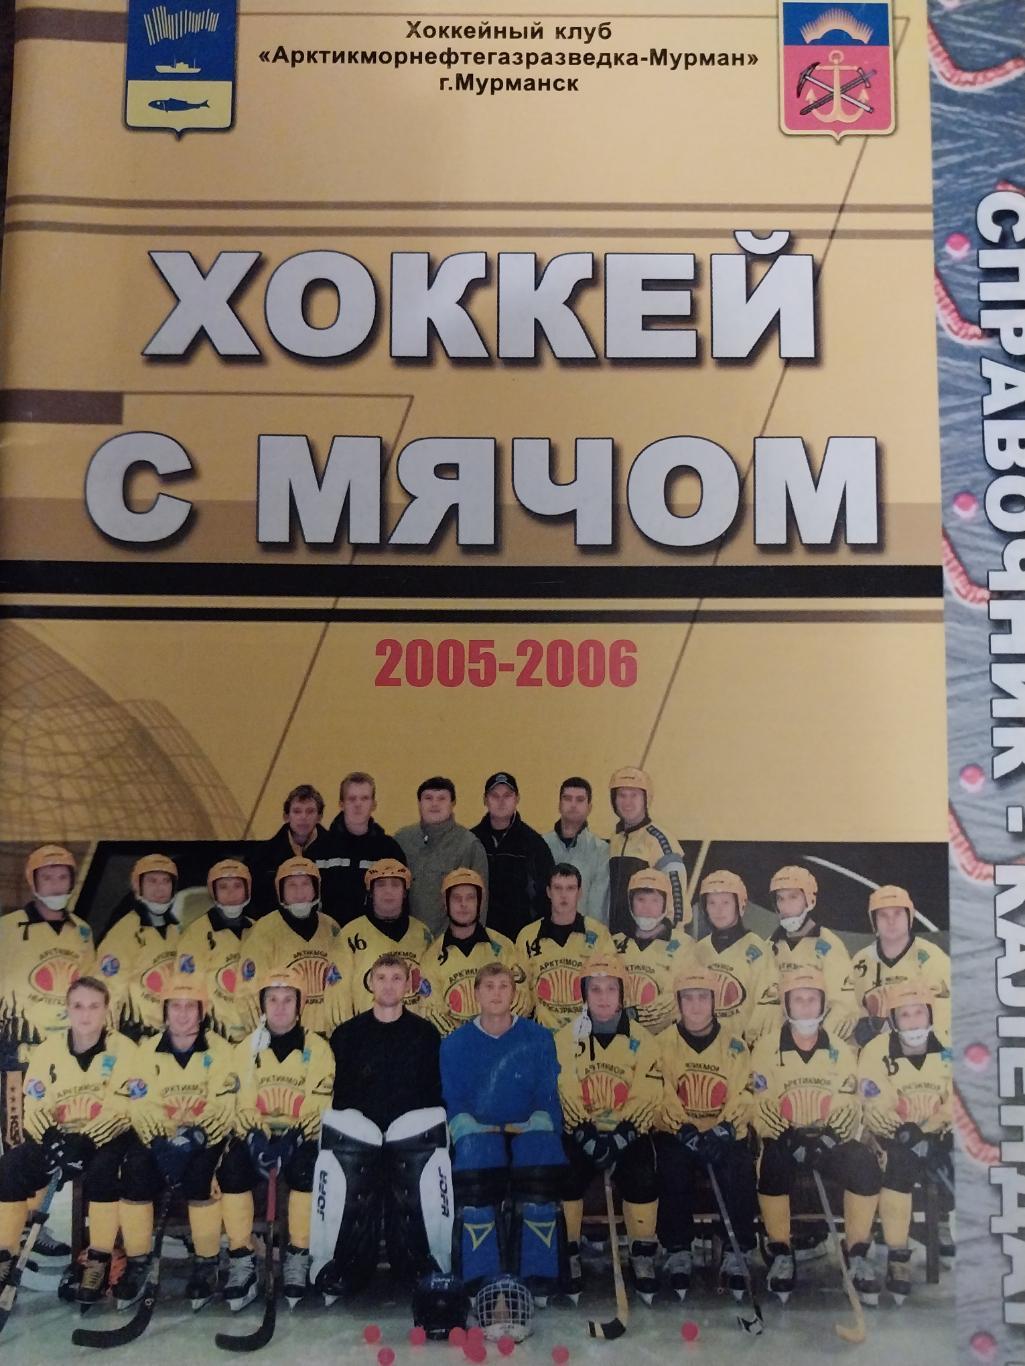 Хоккей с мячом, Мурман (Мурманск) 2005-2006